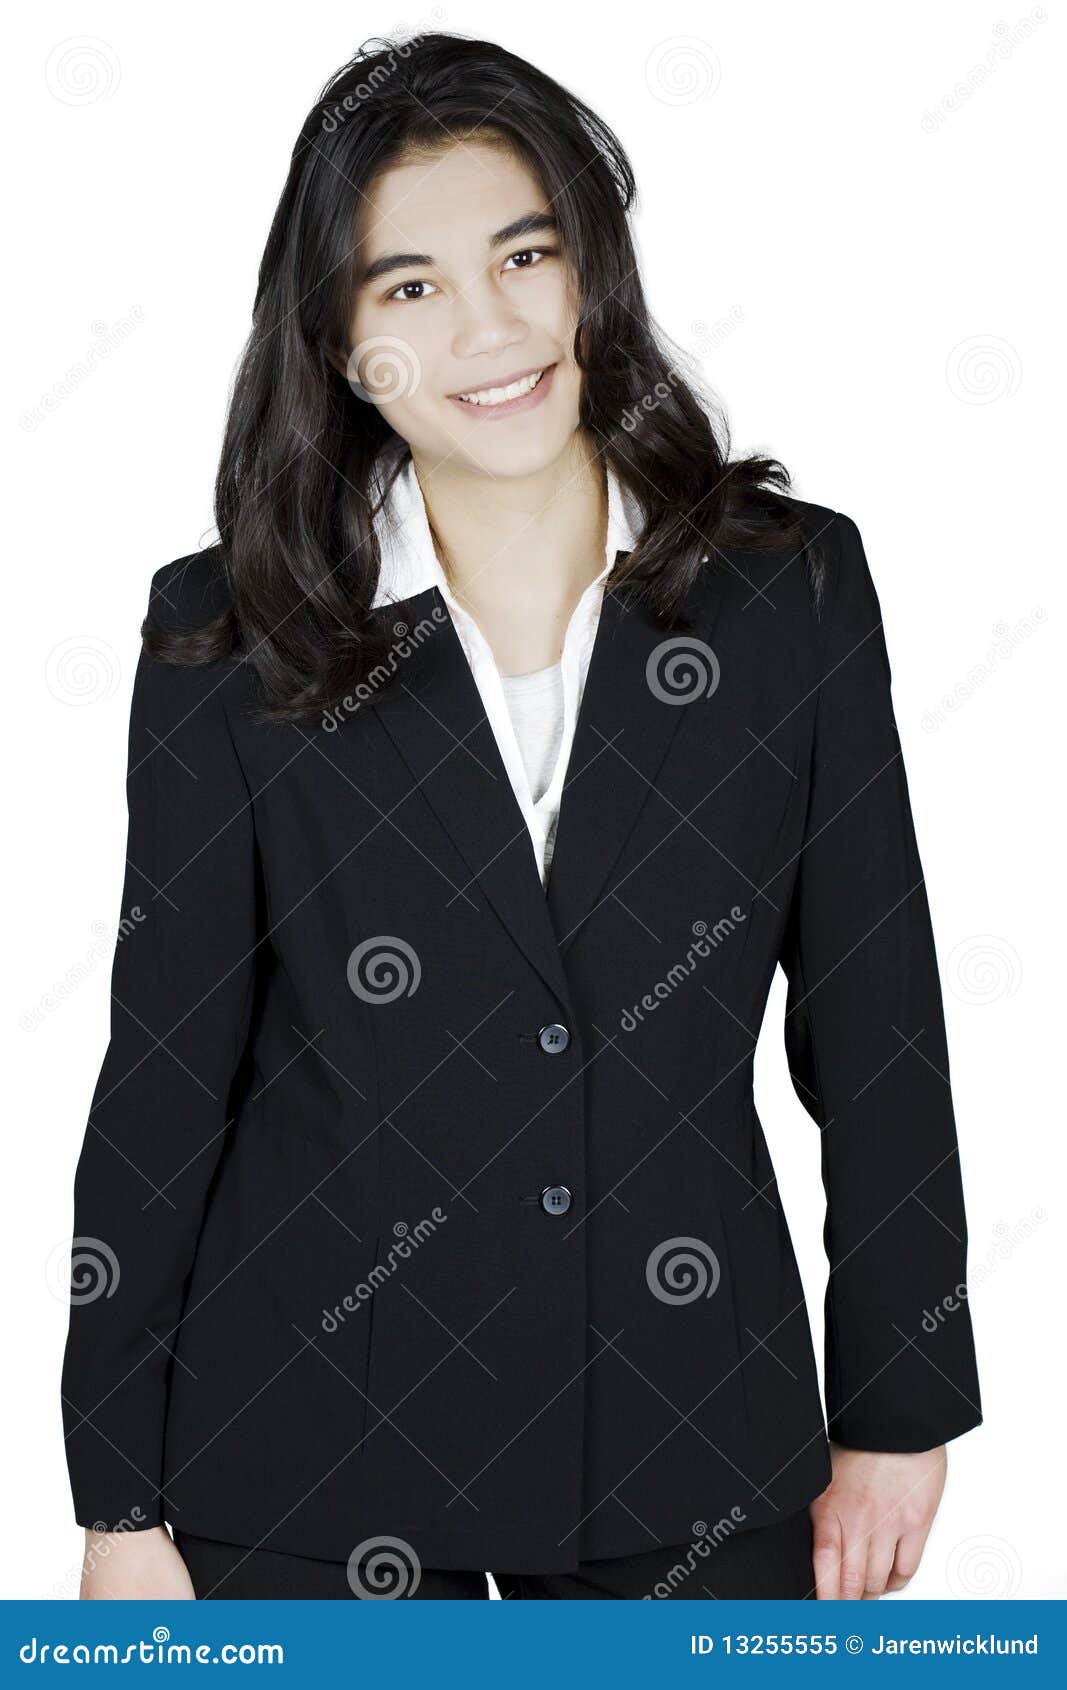 Teen Business Suit 22